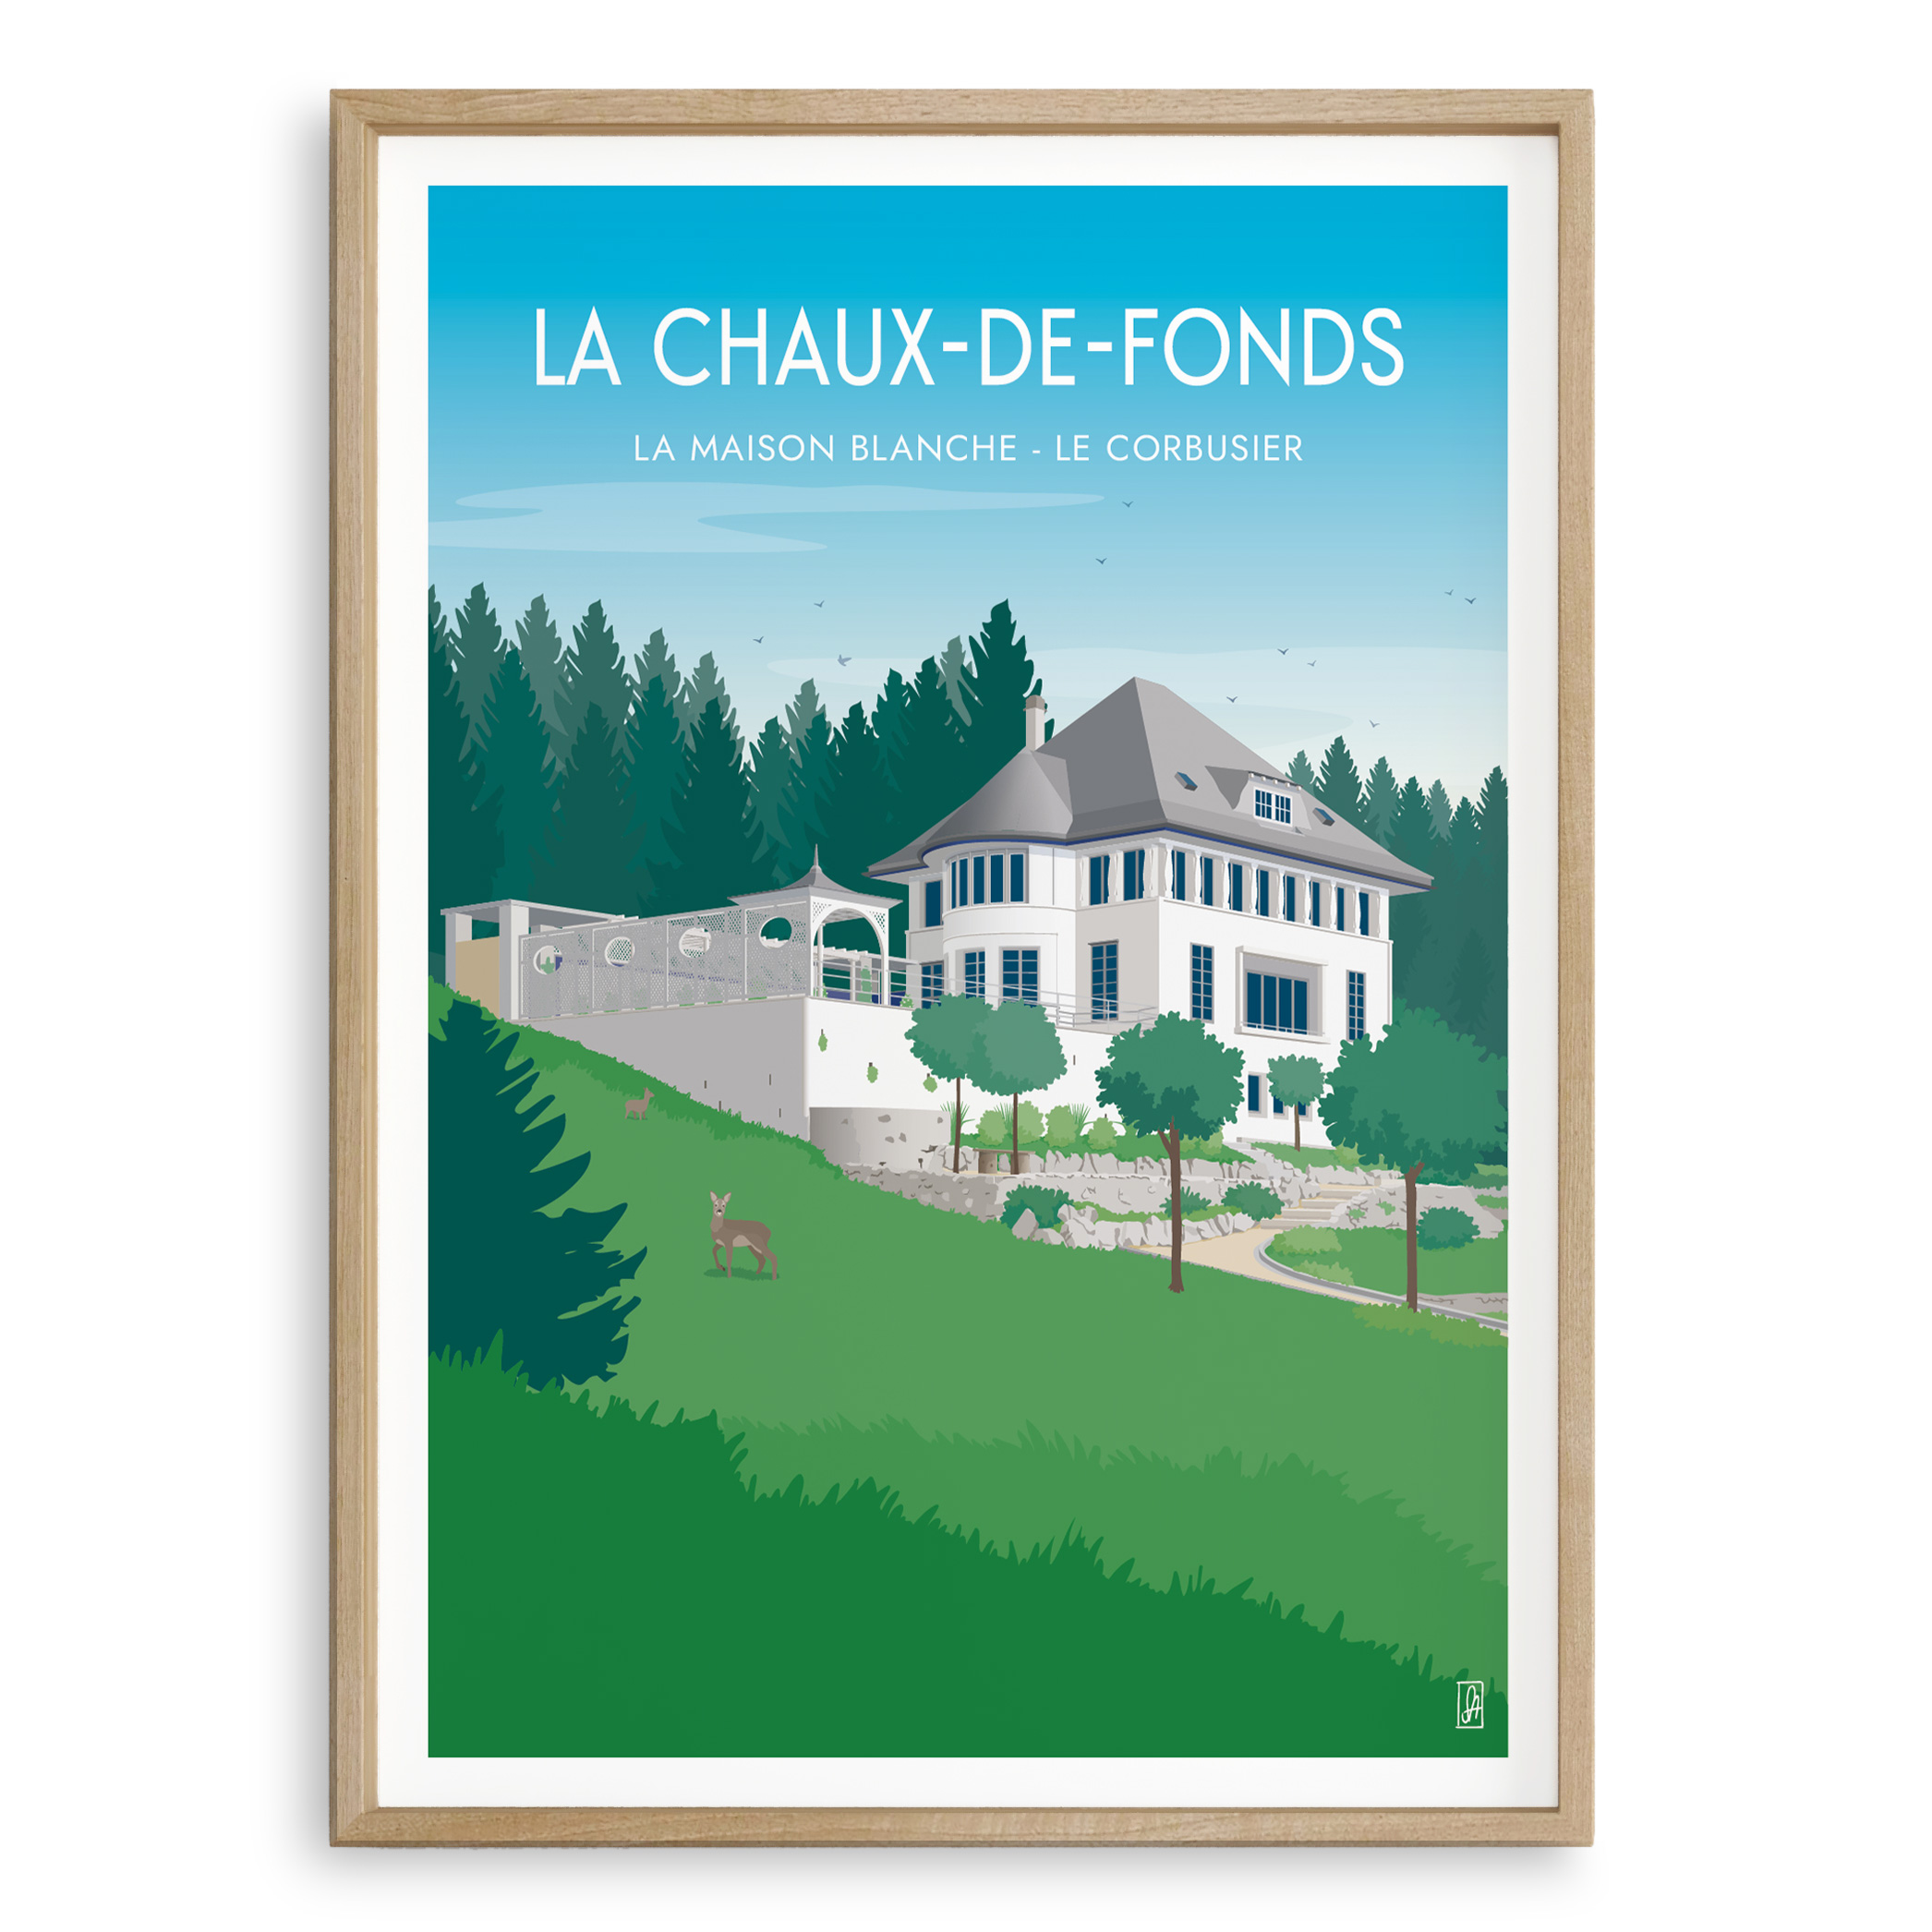 La Chaux-de-Fonds, La Maison blanche